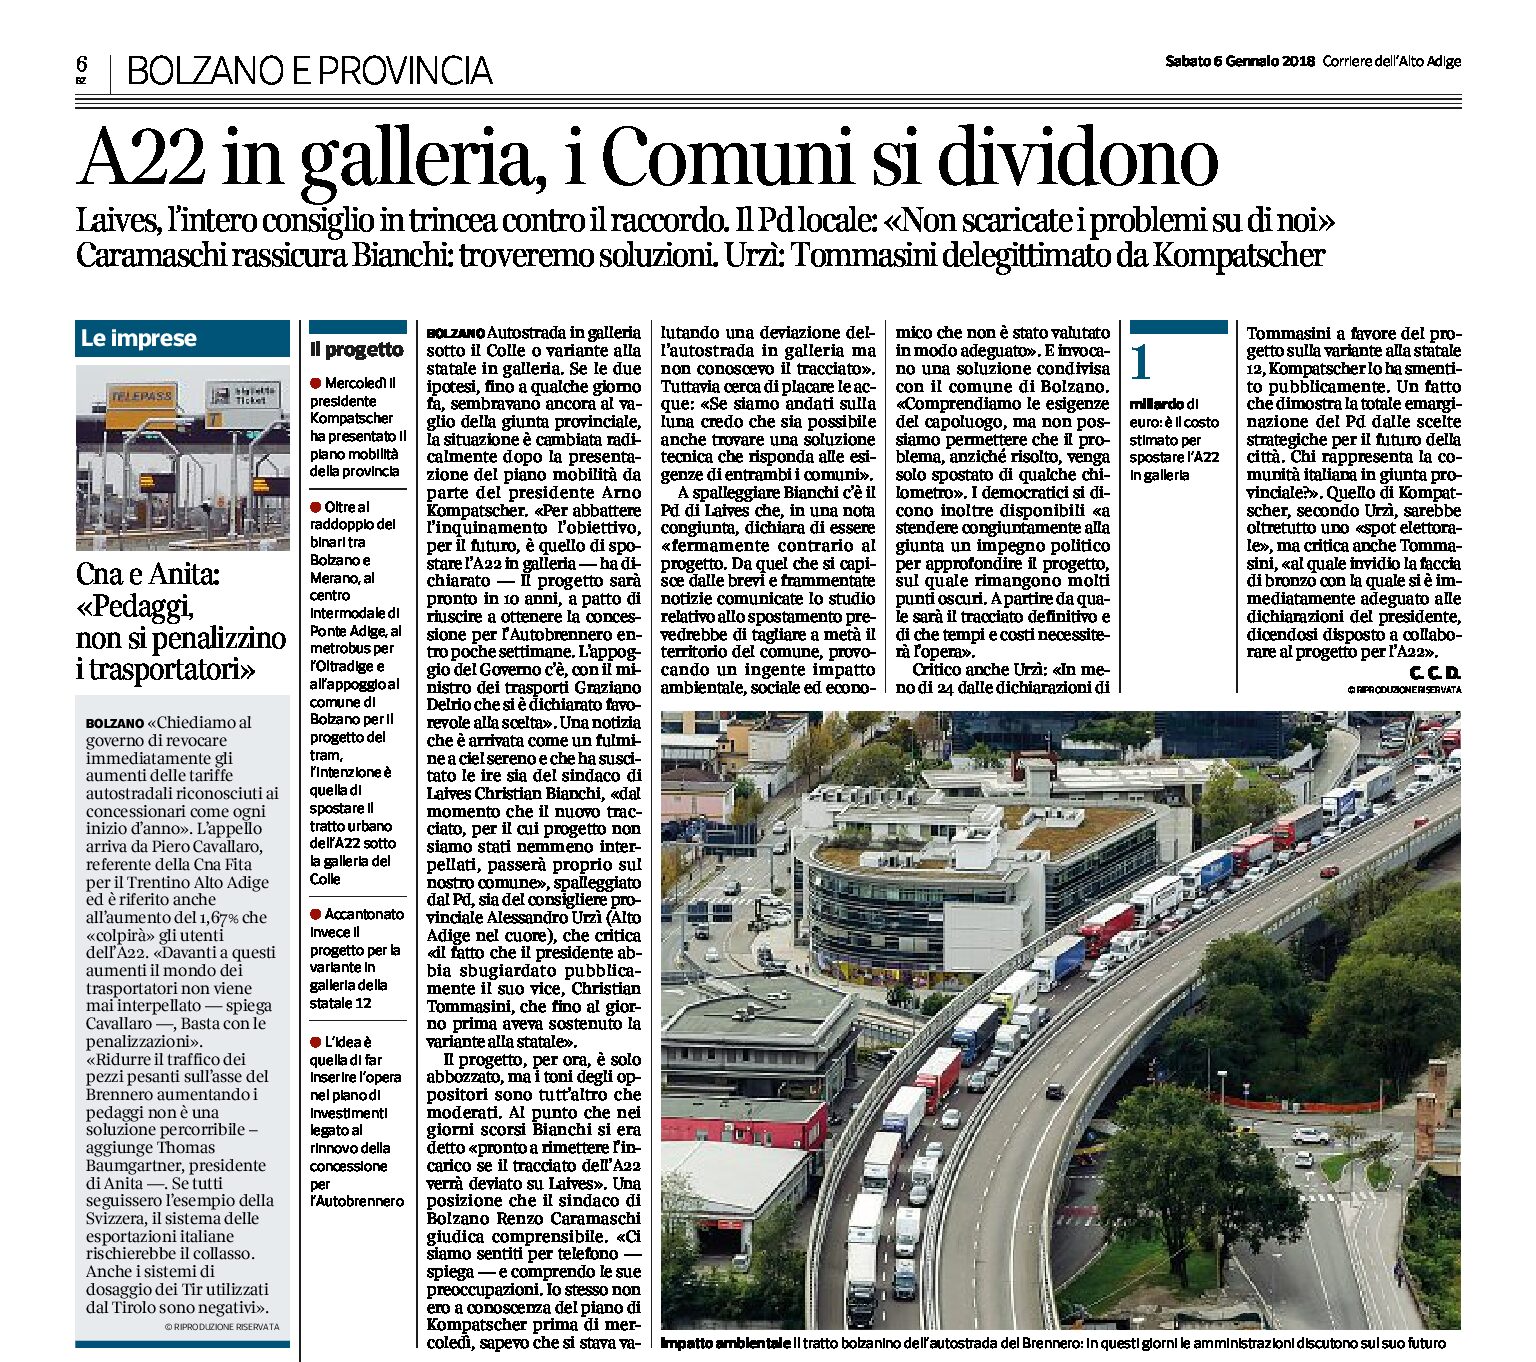 Bolzano: A22 in galleria, i Comuni si dividono. Contrario il sindaco di Laives